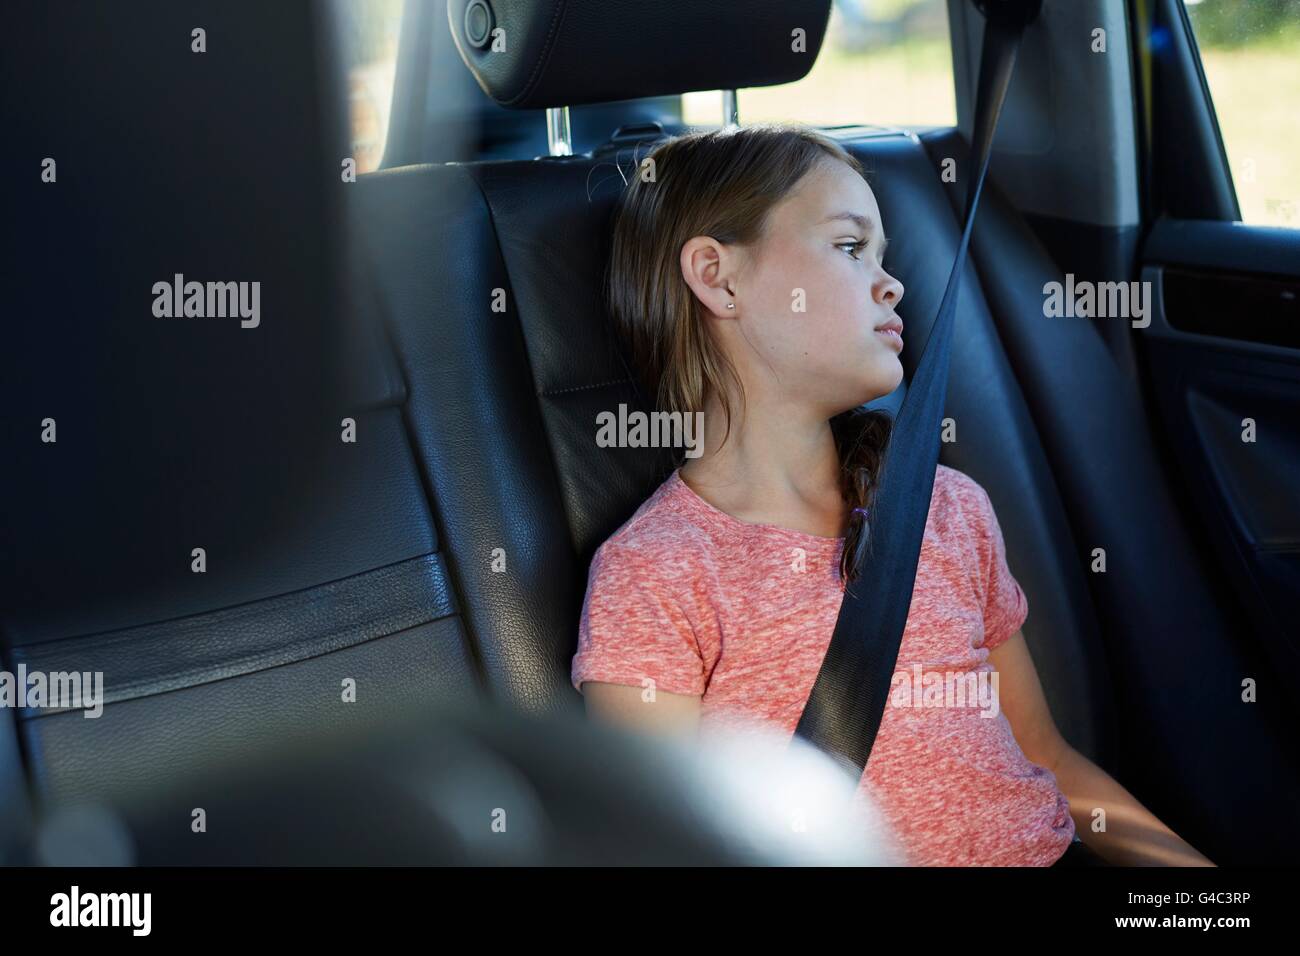 Modelo liberado. Chica en el asiento de atrás del coche usando el cinturón de seguridad. Foto de stock